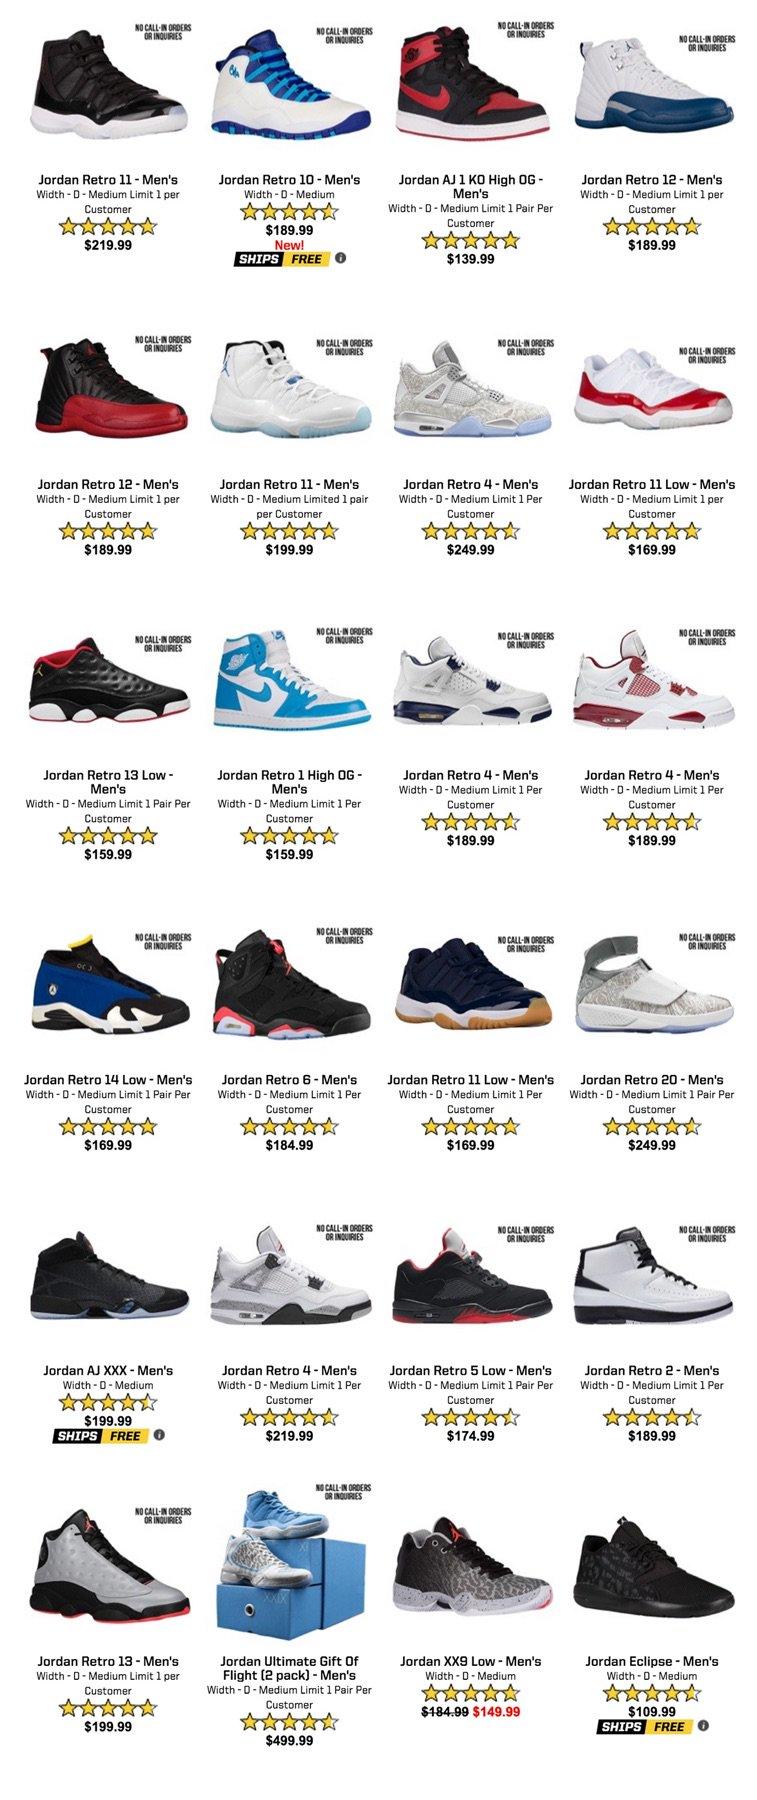 Air Jordan Restock Eastbay June 2016 - Sneaker Bar Detroit